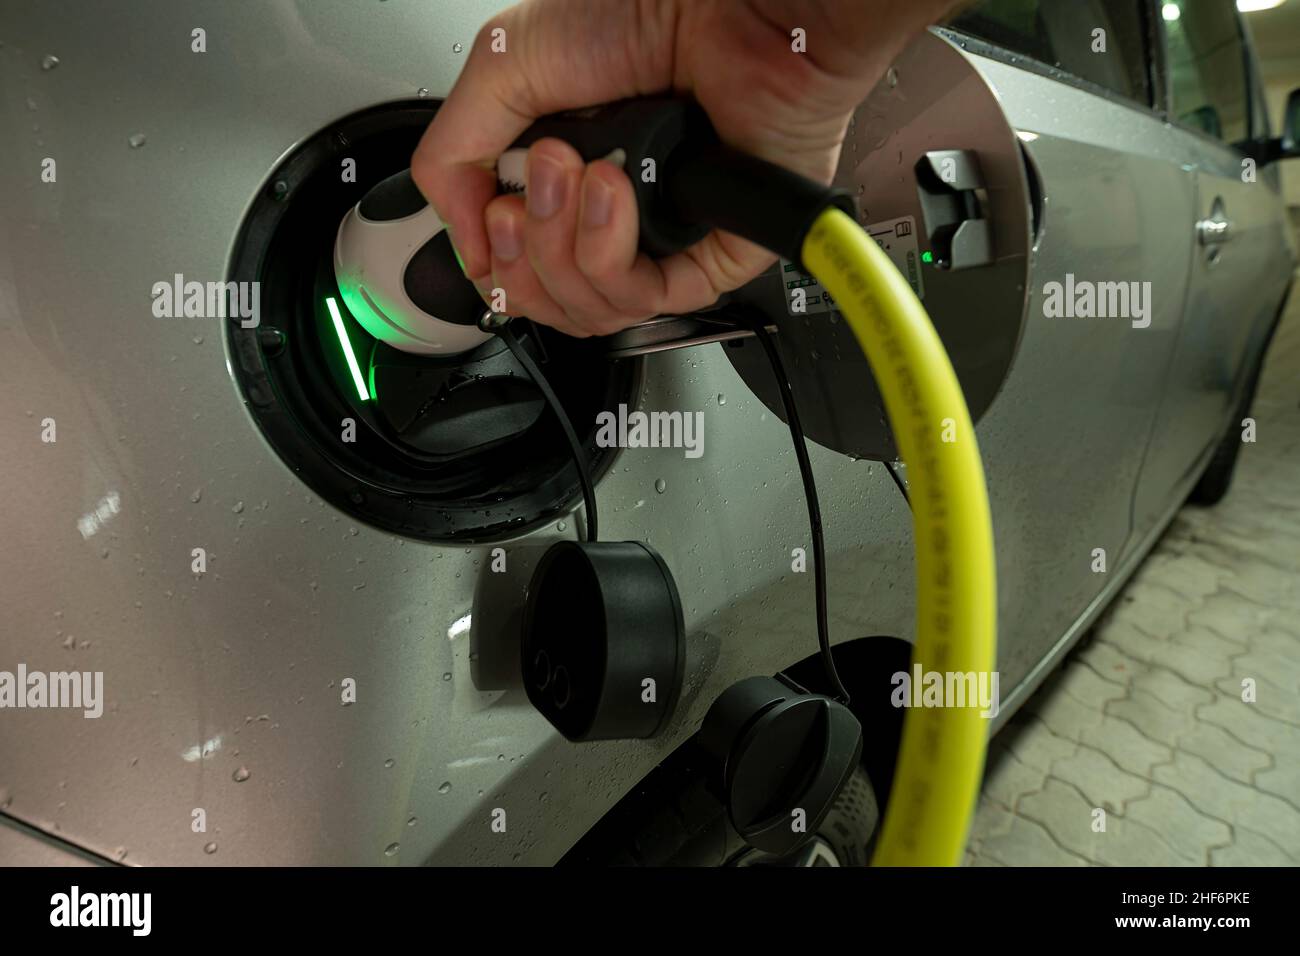 Hände auf das Ladekabel eines E-Autos mit aktivem Ladevorgang, das durch das grüne Licht angezeigt wird Stockfoto